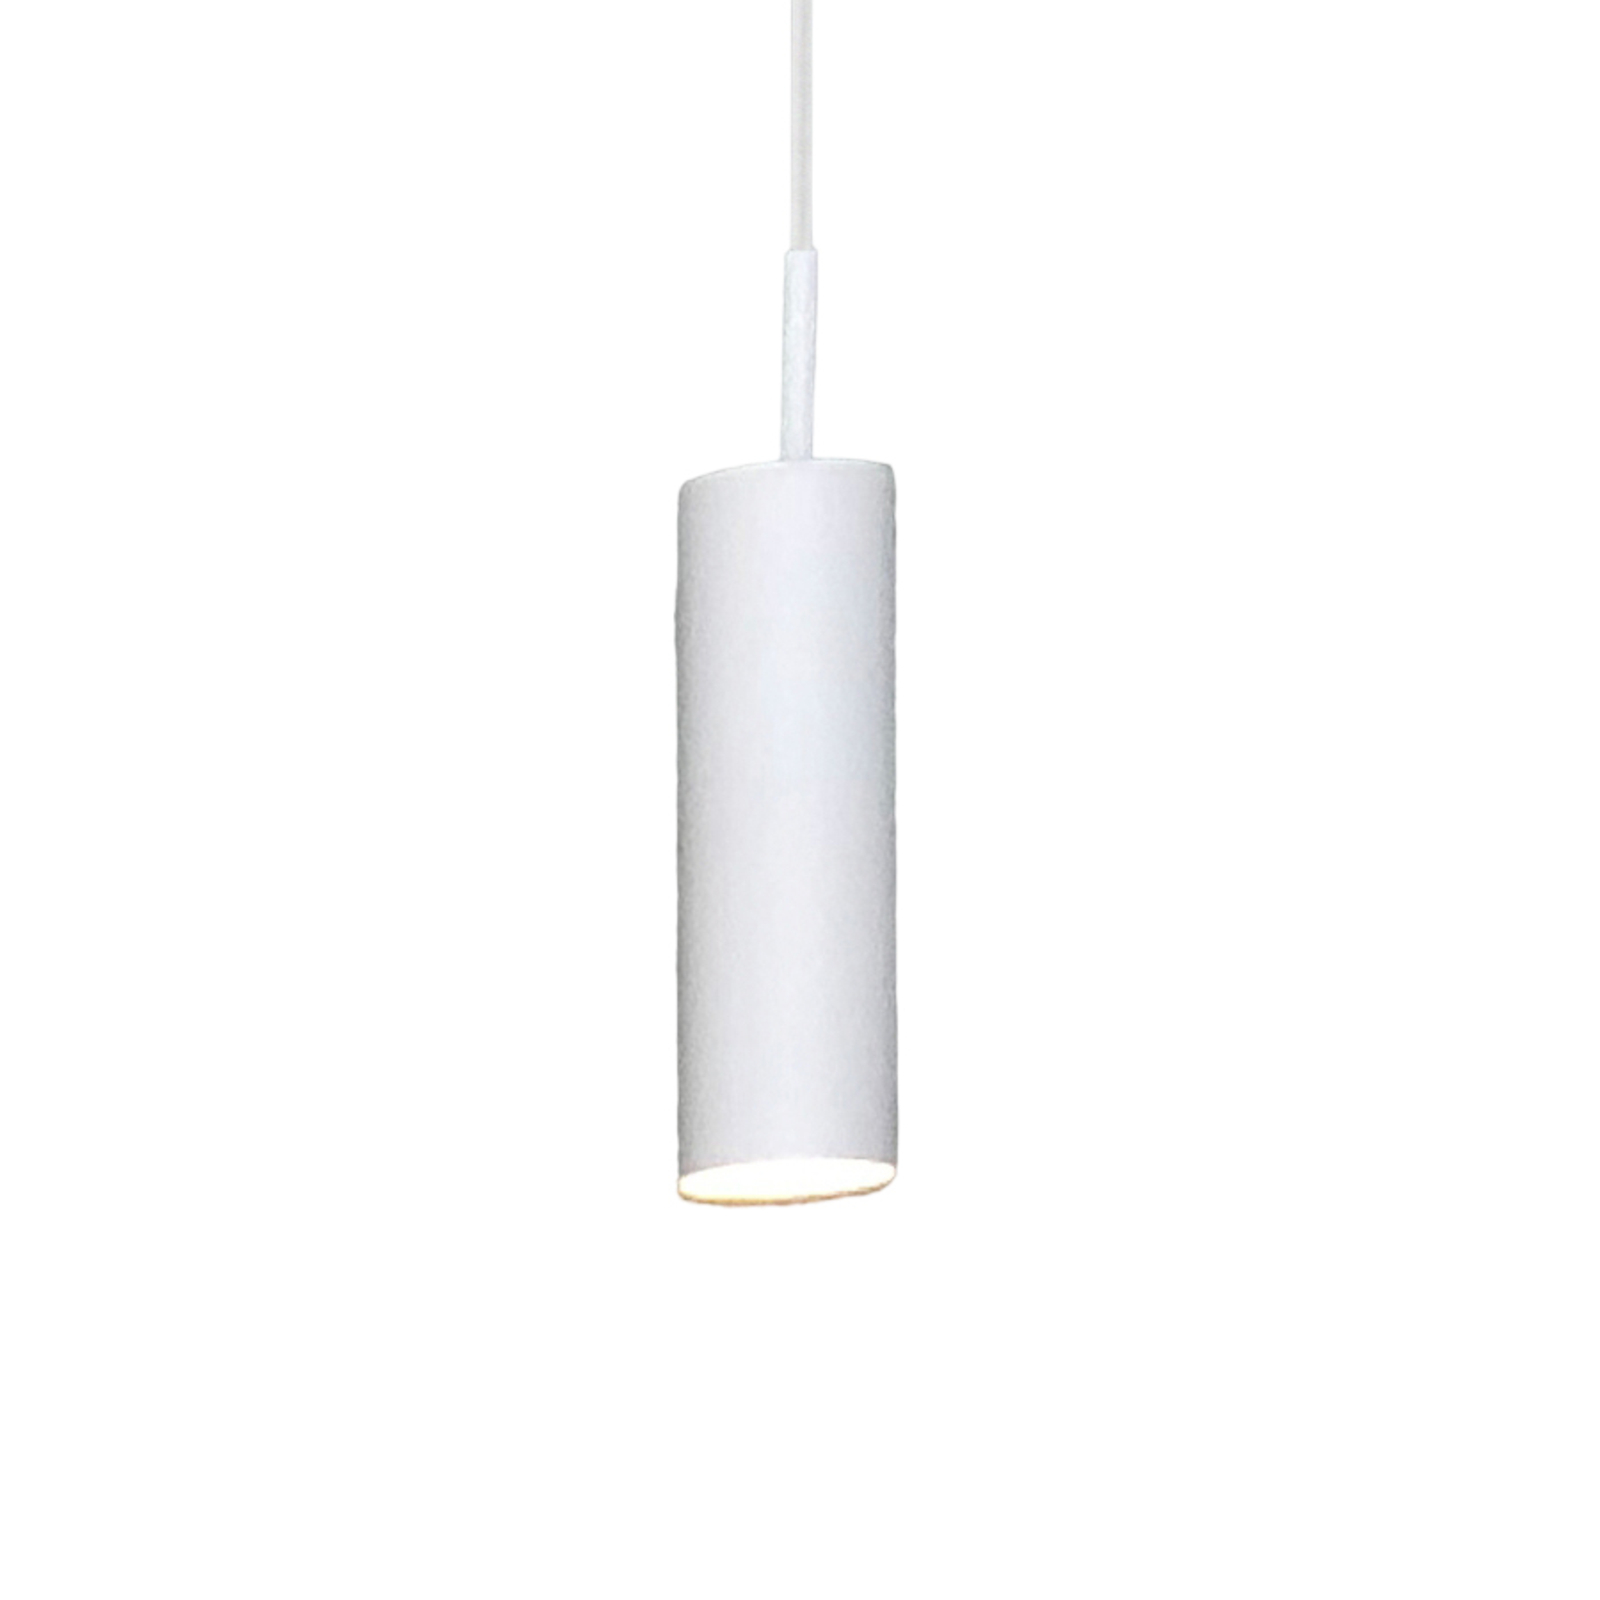 MIB 6 viseća svjetiljka s grlom GU10, bijela